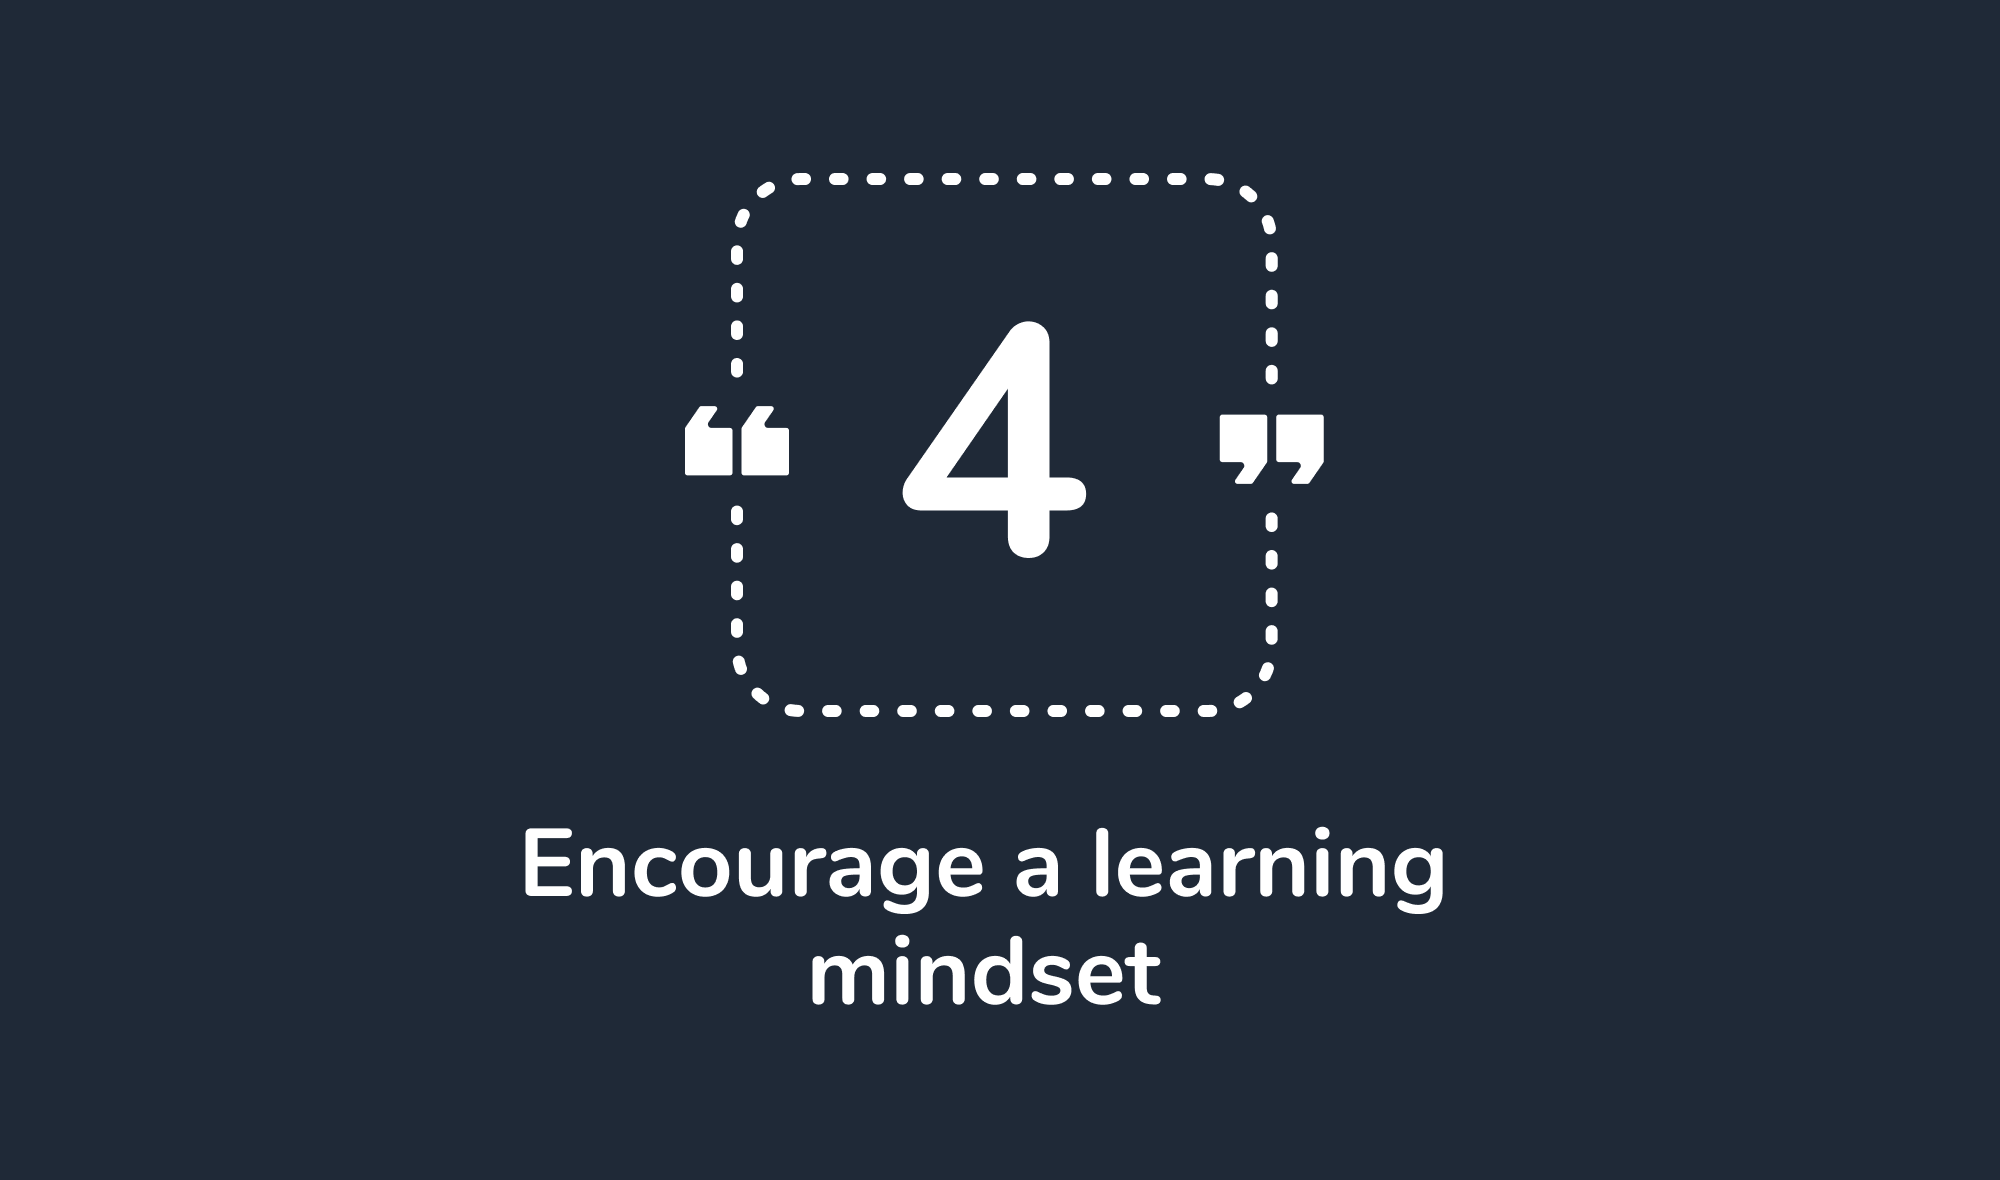 4. Encourage a learning mindset